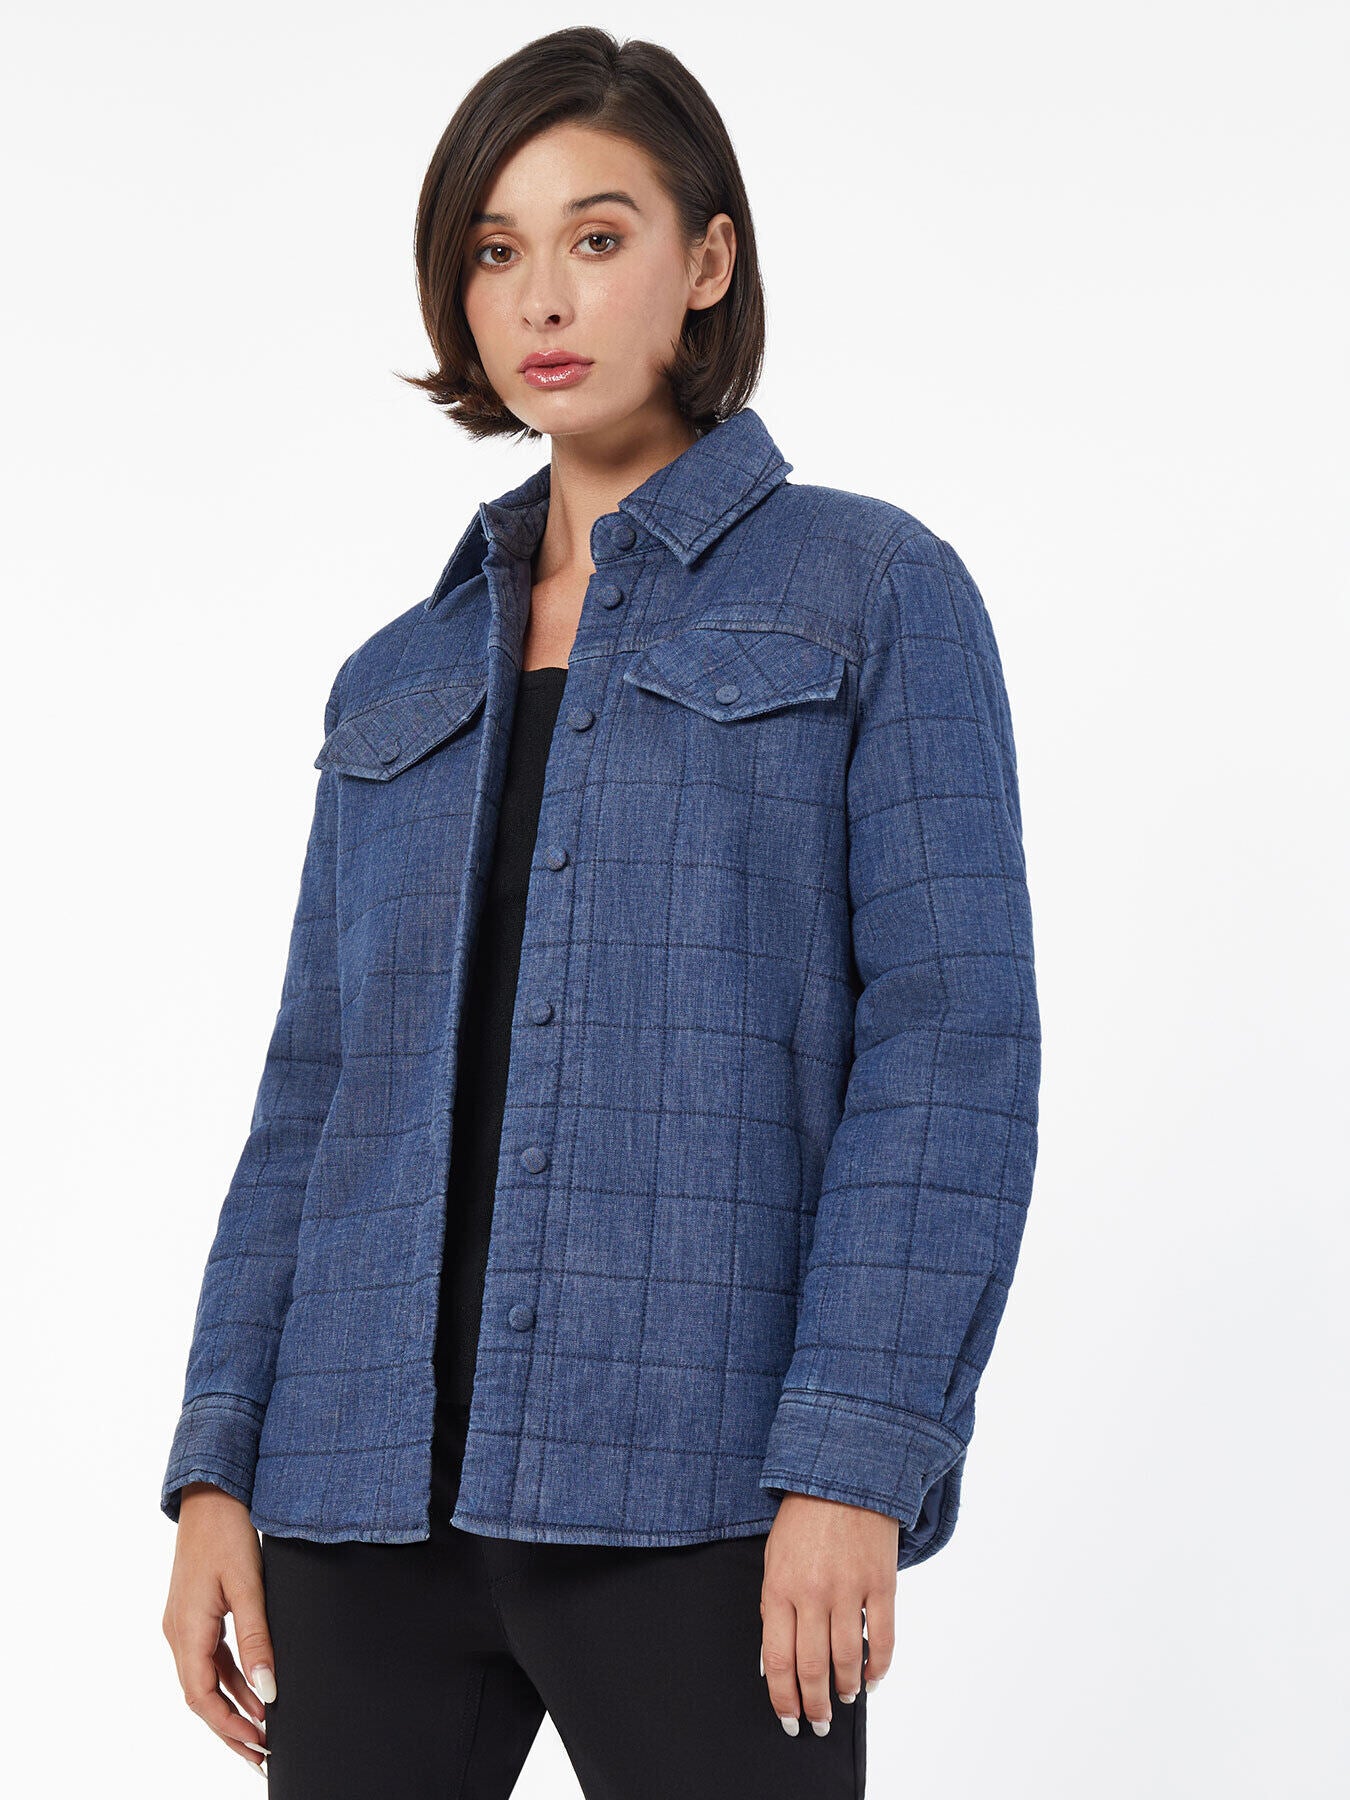 Women's Jackets - Women's Blazer